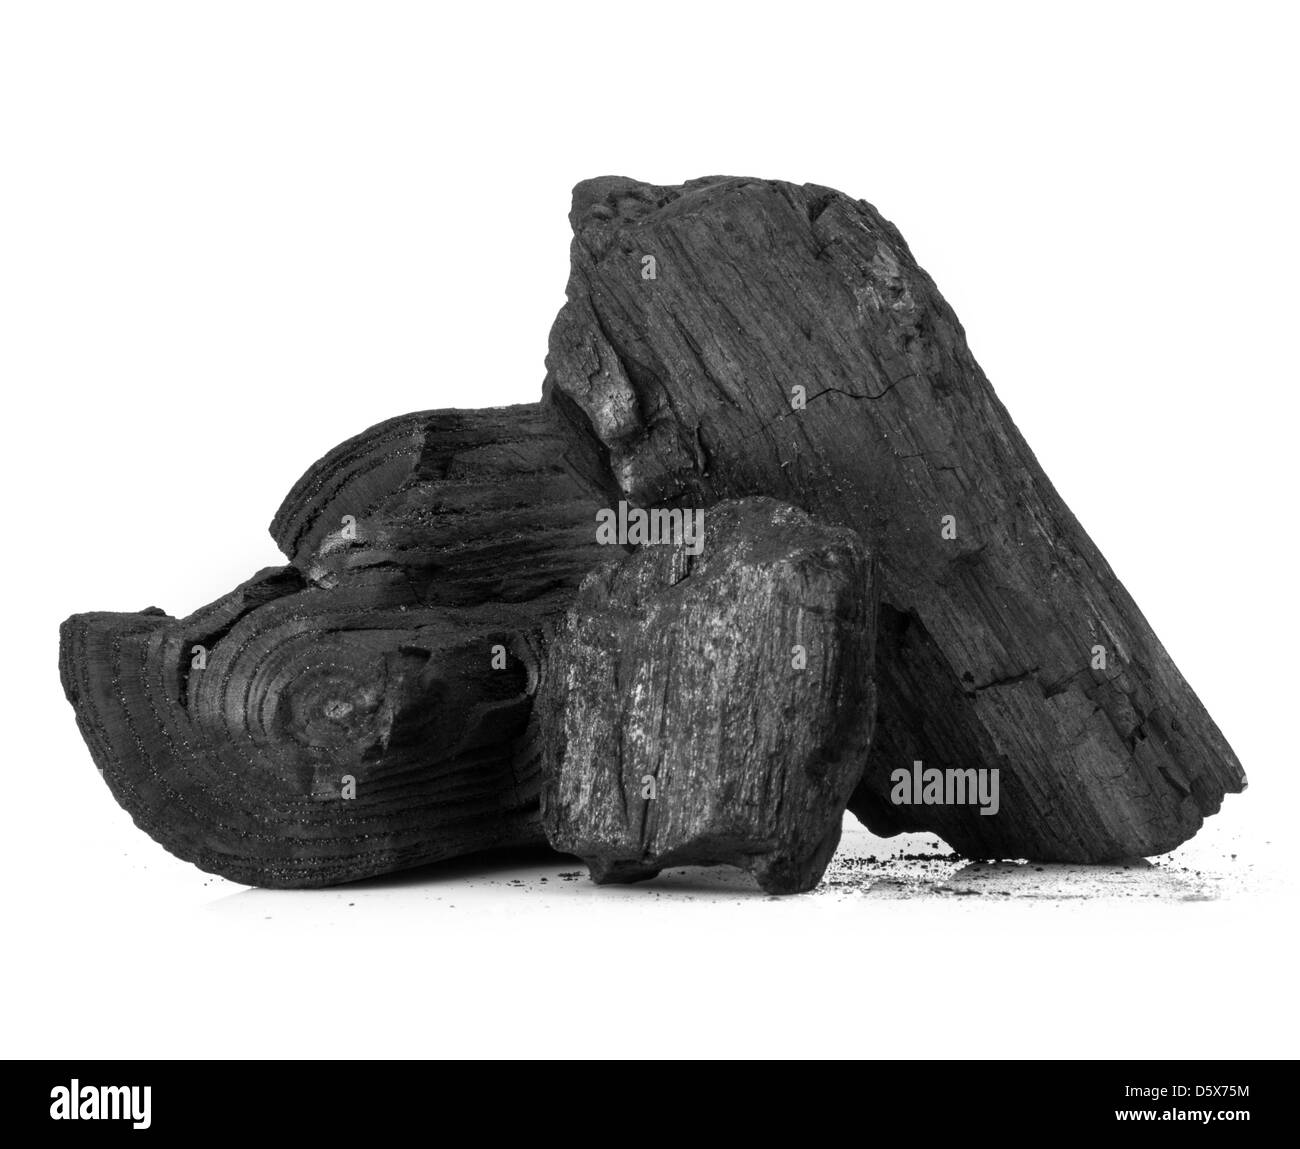 Morceau de bois charbon fracturés isolated over white background Banque D'Images